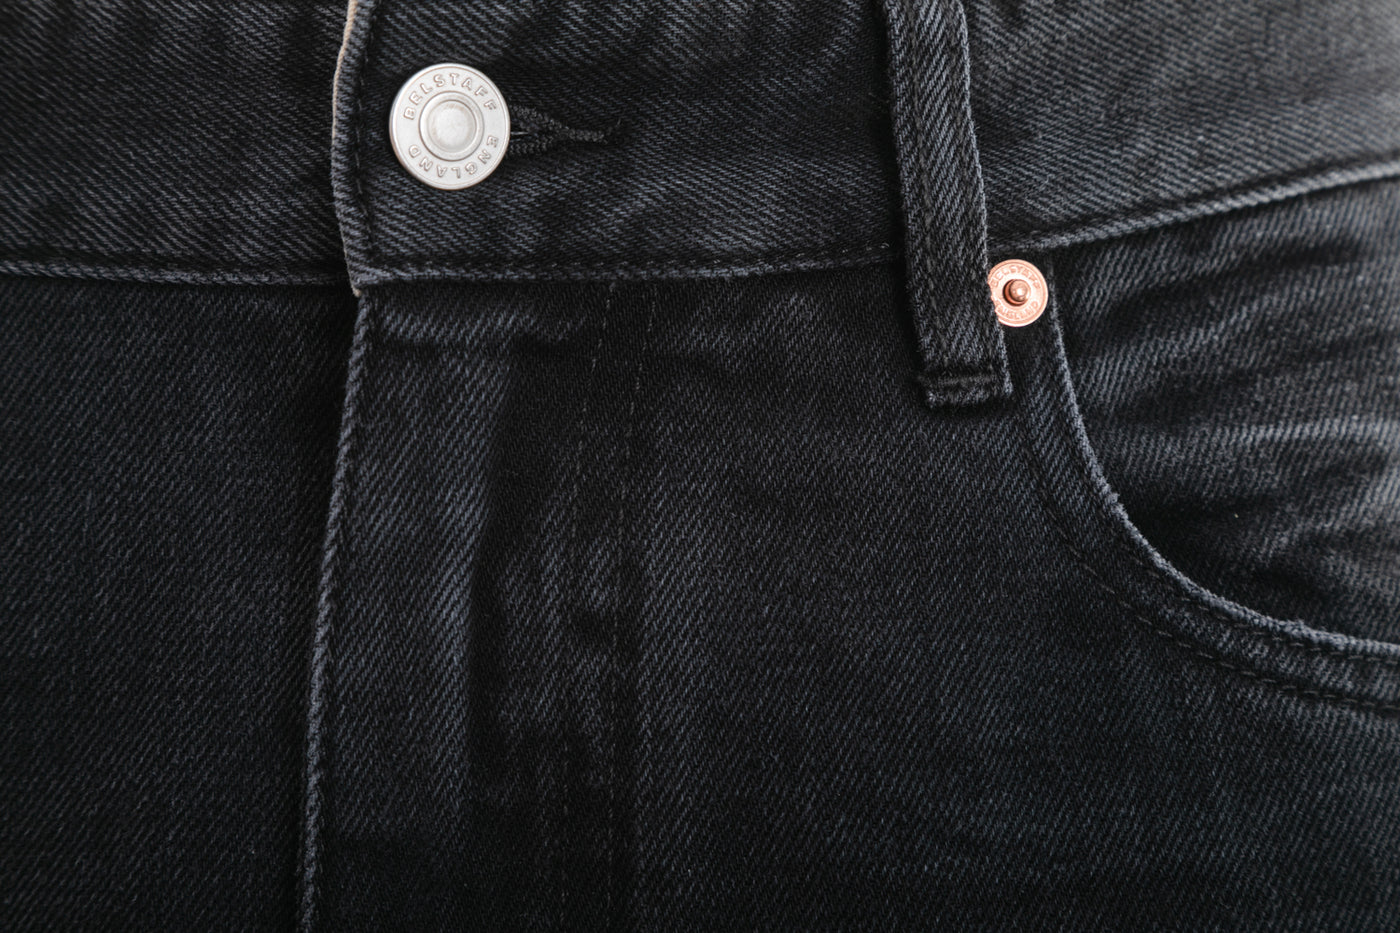 Belstaff Longton Slim Jean in Washed Black Button